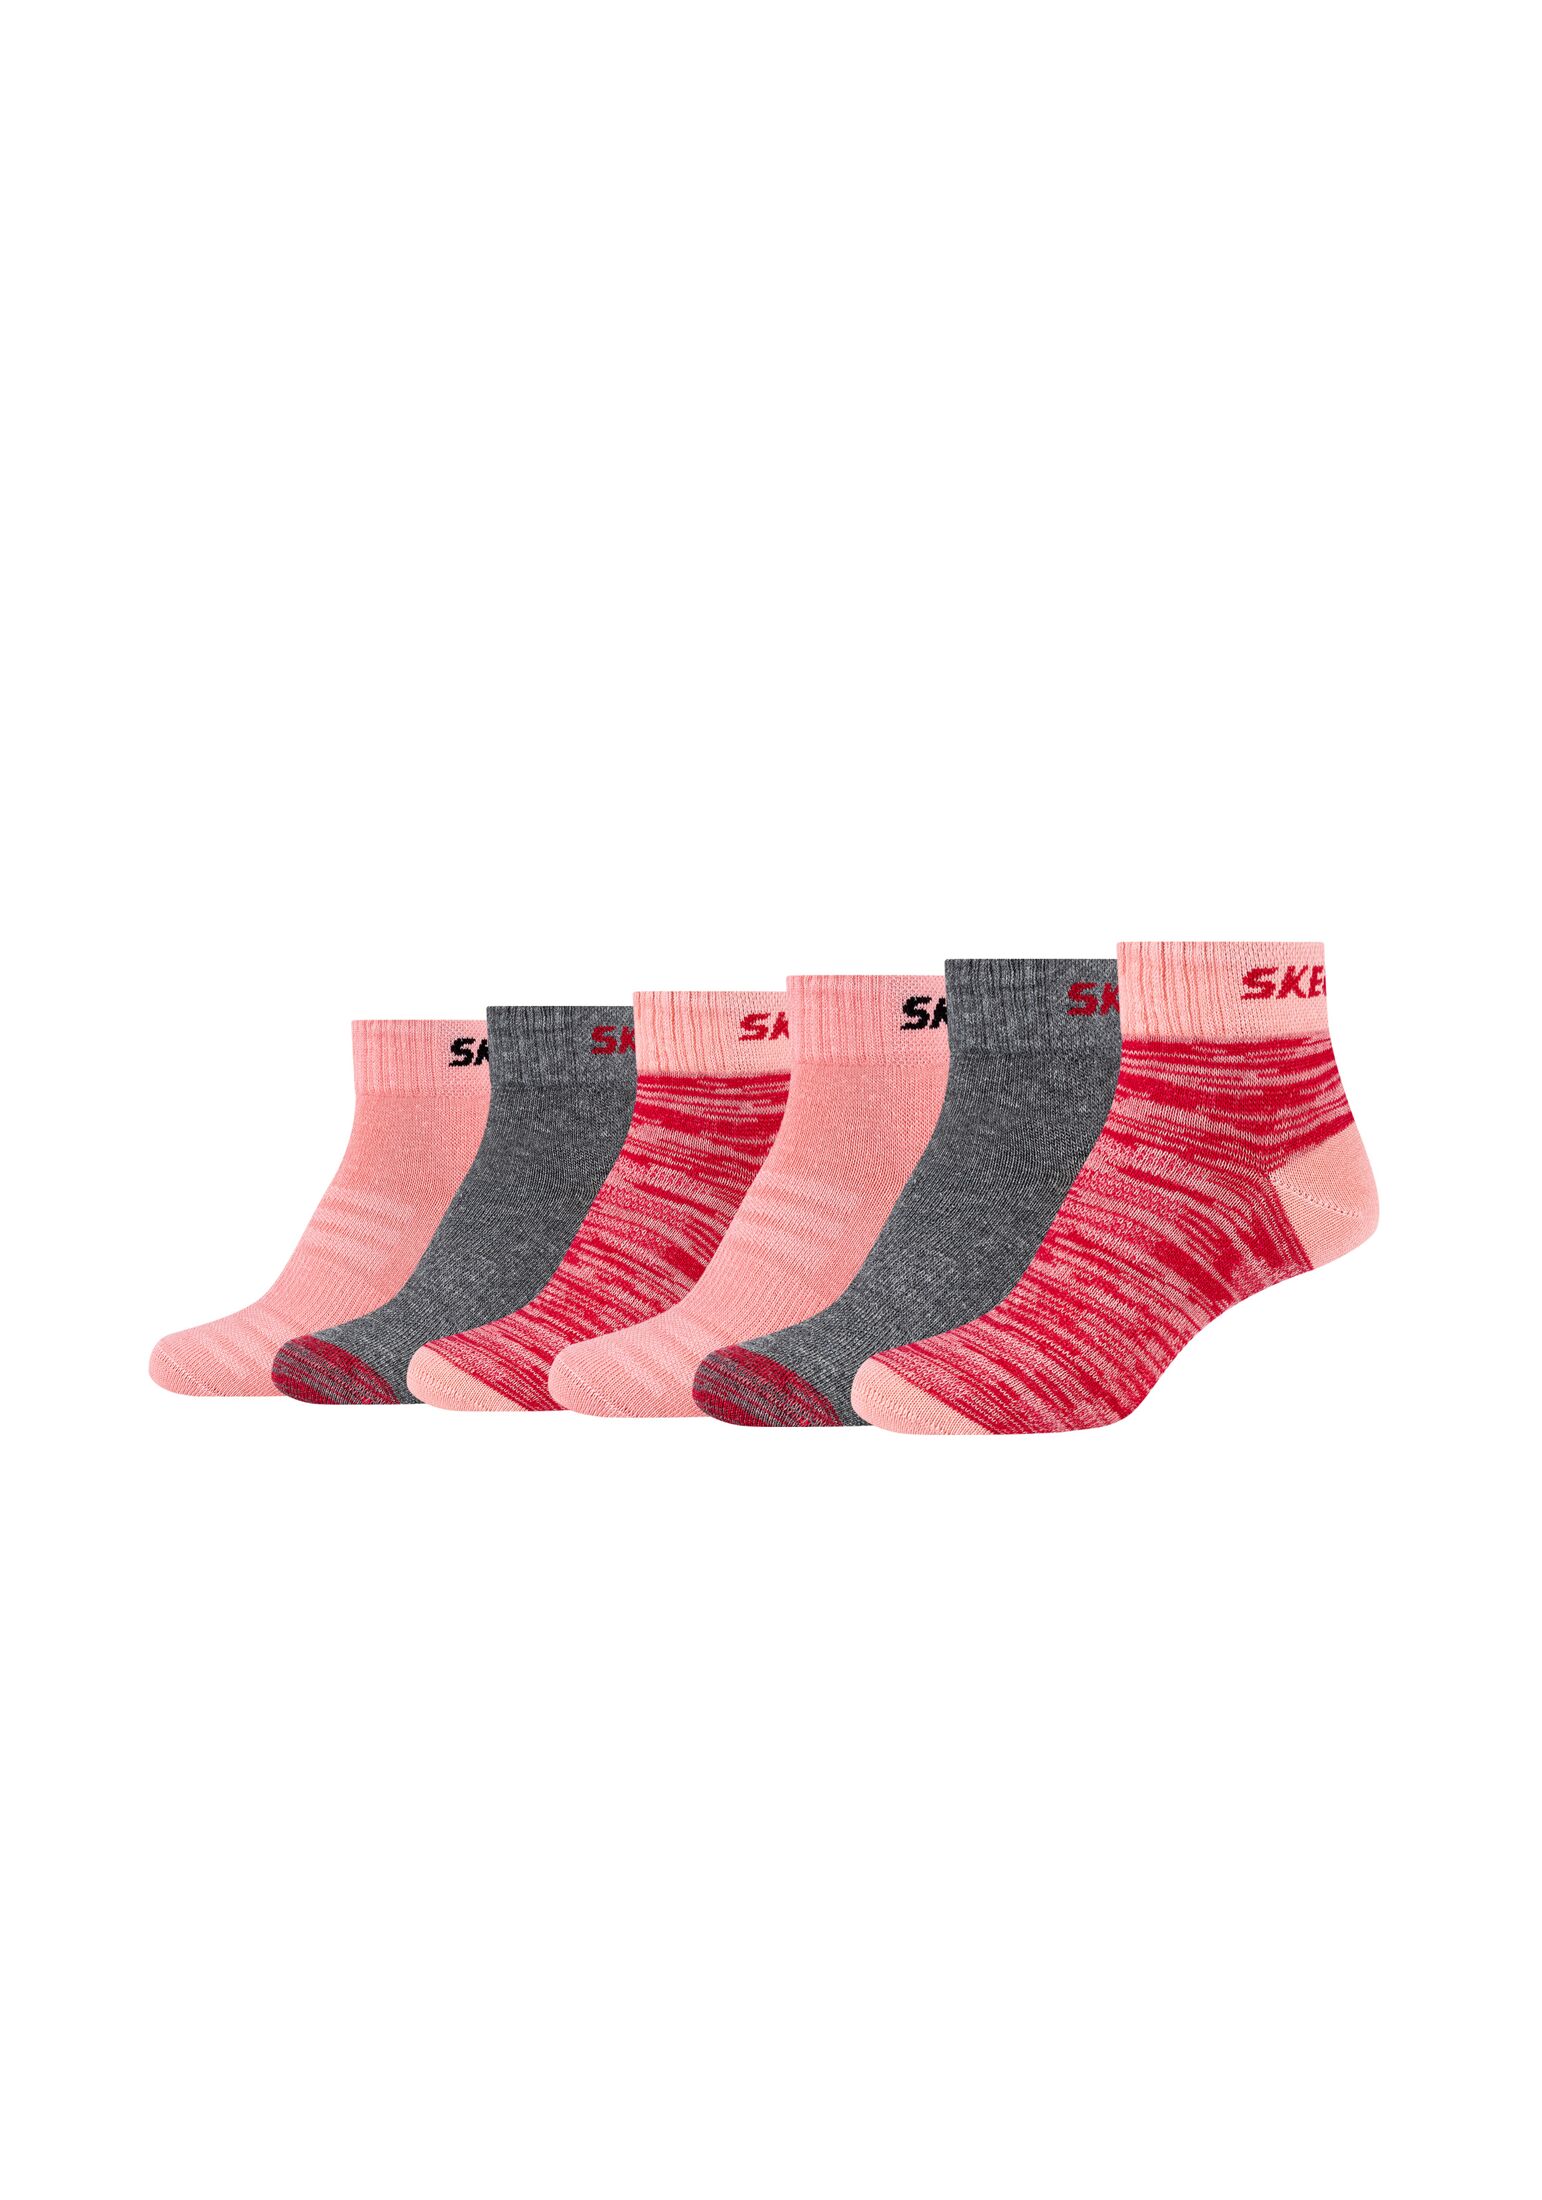 Носки Skechers 6 шт mesh ventilation, цвет flamingo mix